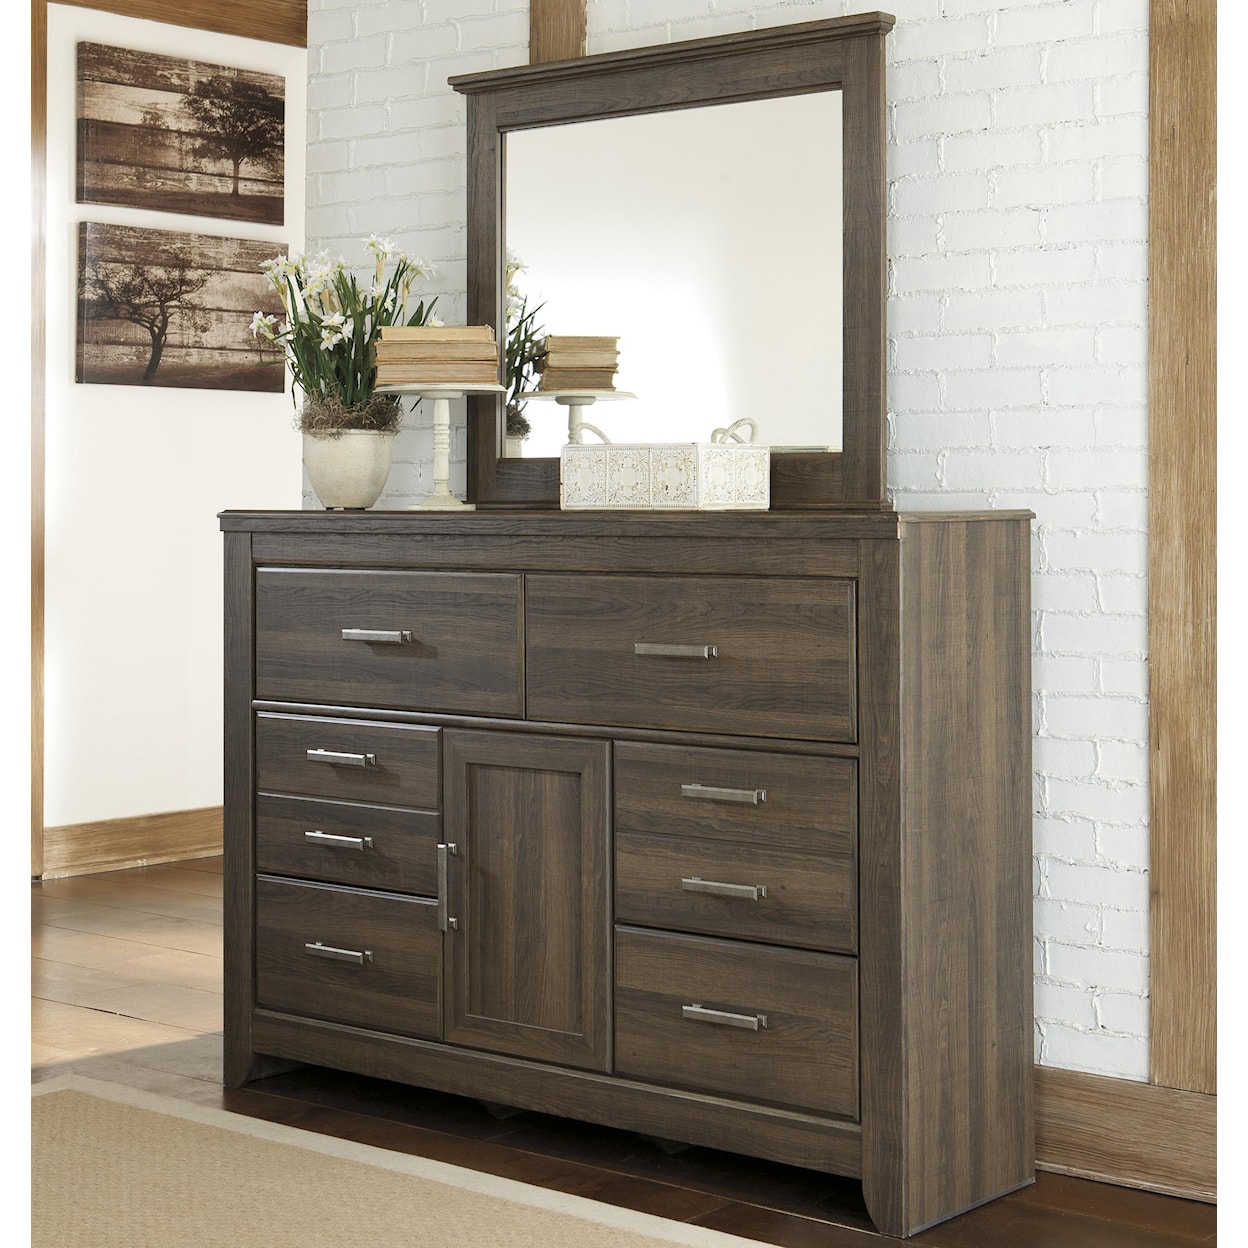 Ashley Furniture Signature Design Juararo Dresser and Mirror Set